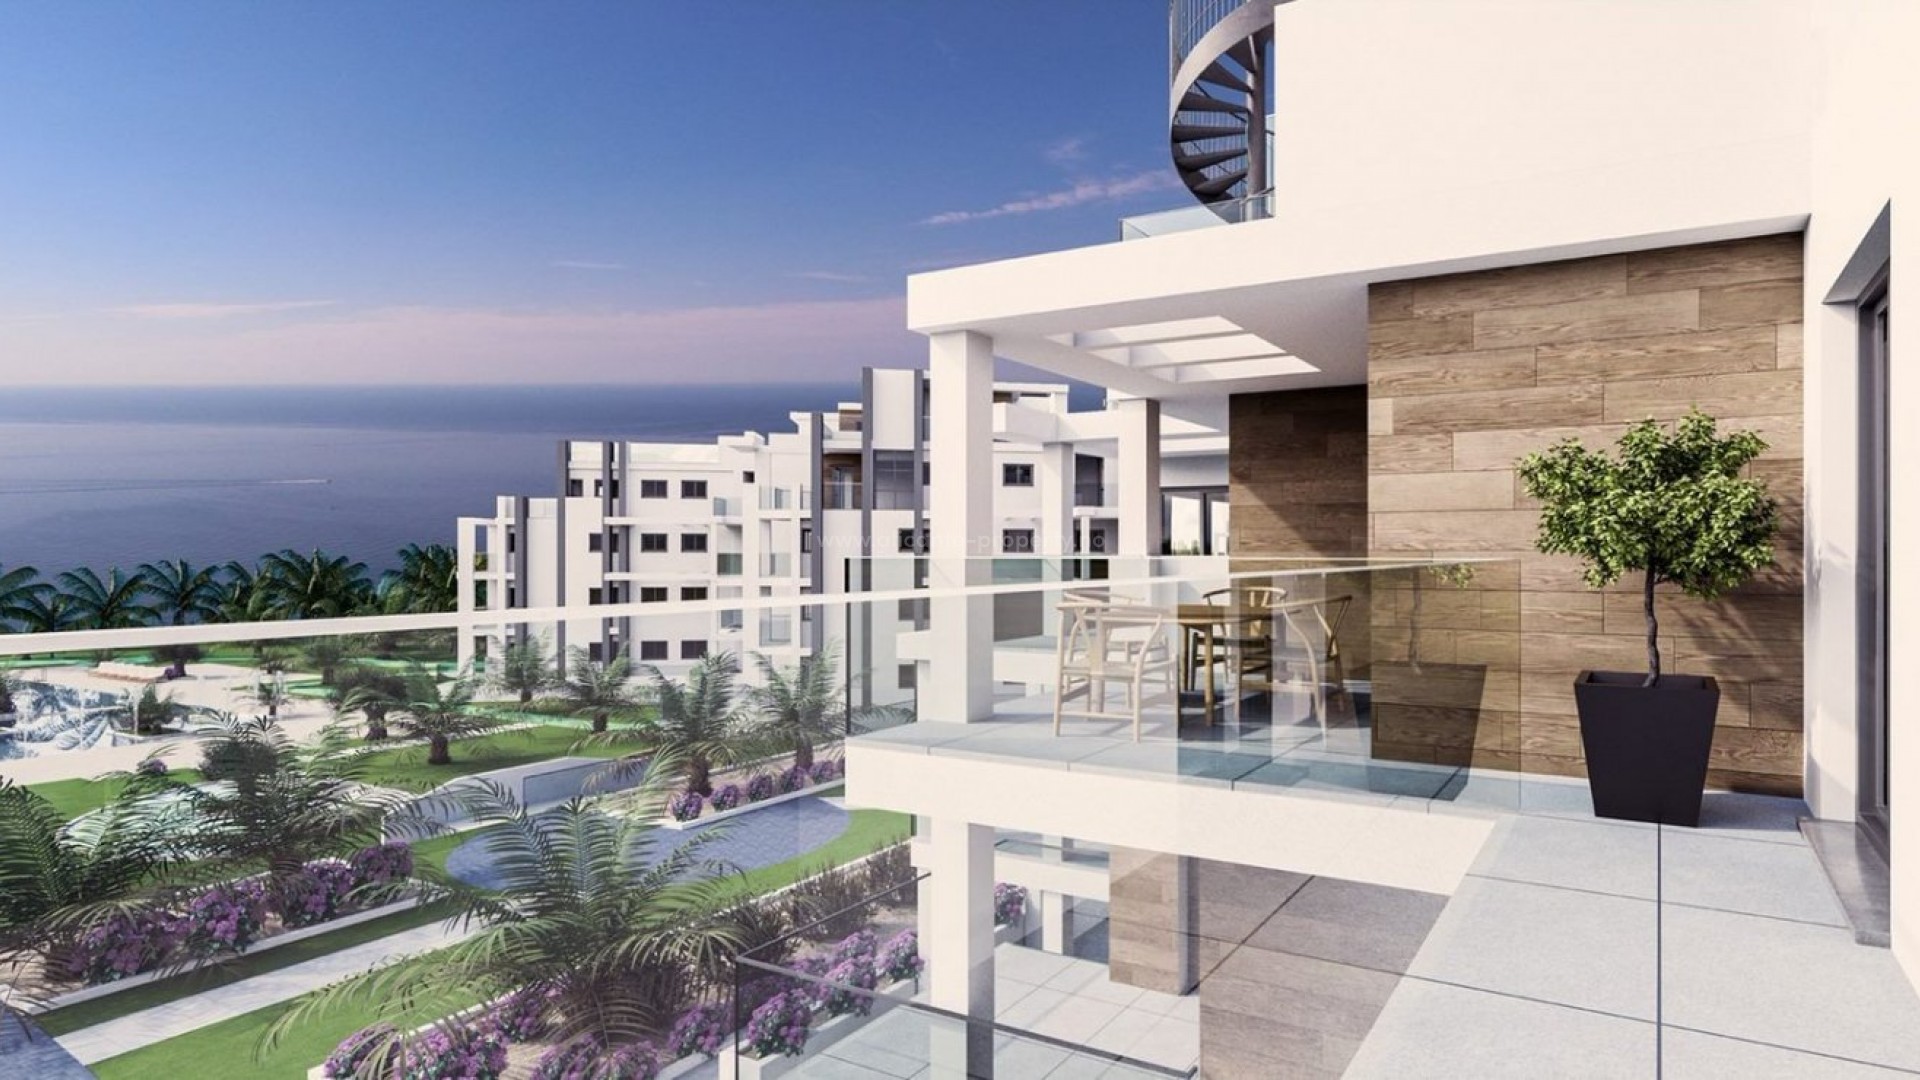 Nye leiligheter i Denia - eksklusive luksus leilighet rett ved sjøen. 3 og 2 soverom, havutsikt. Ligger på stranden, uslåelig beliggenhet. 7 km til sentrum